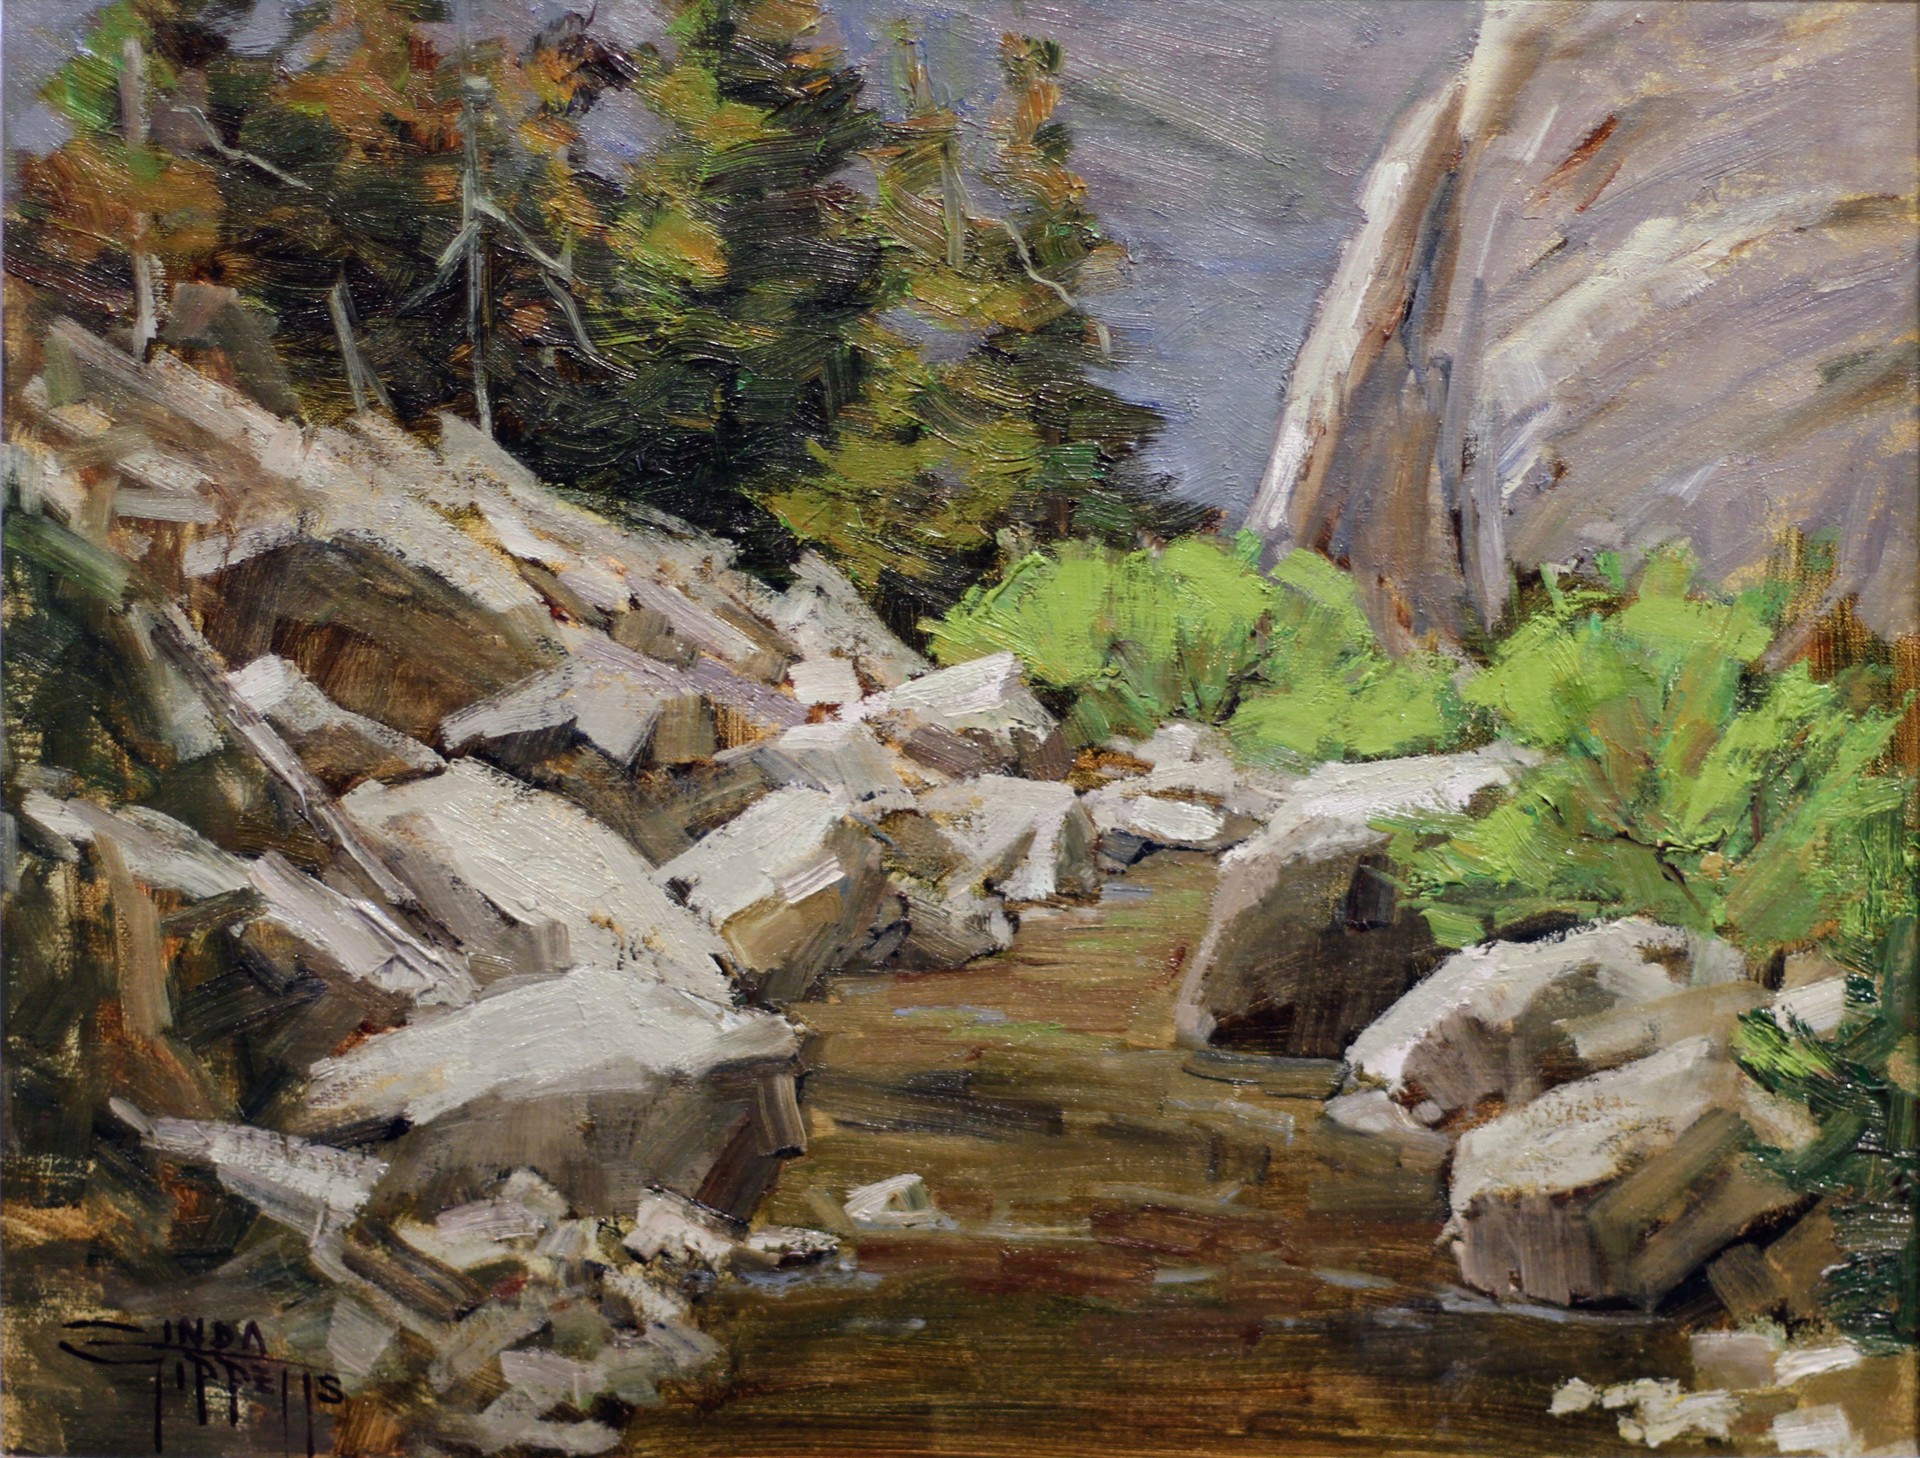 The Muddy Creek Hike by Linda Tippetts